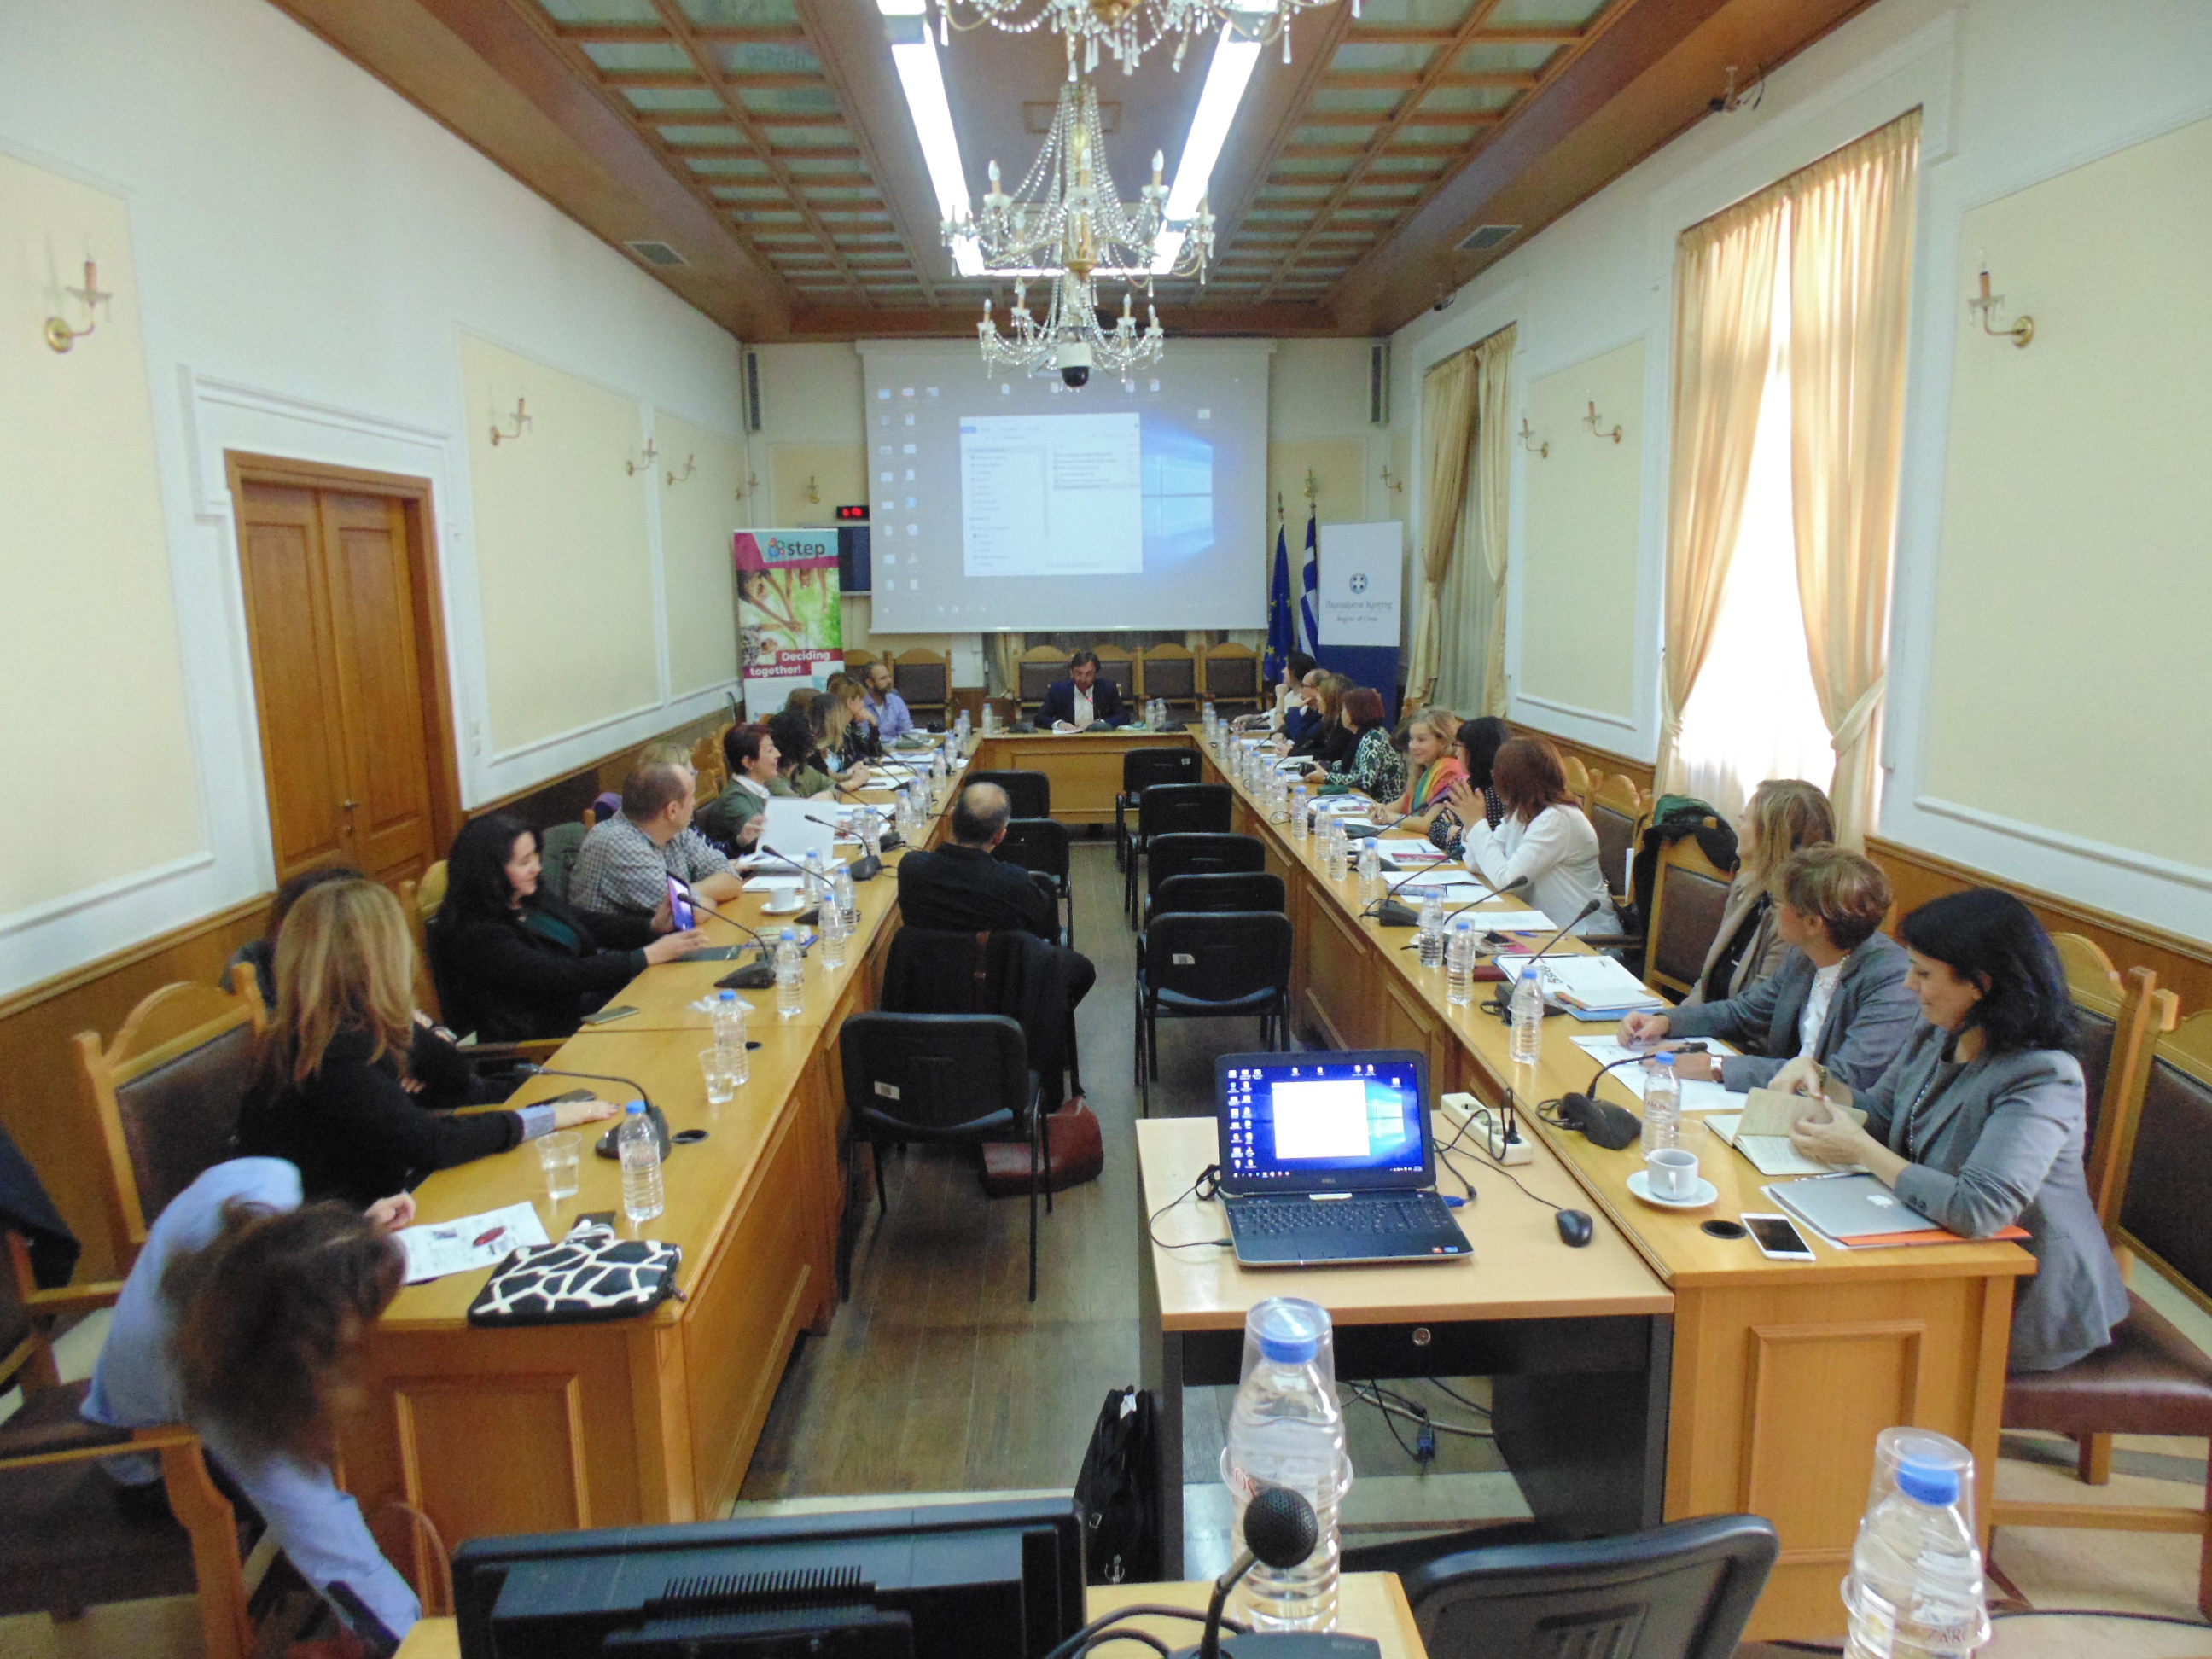 Παρουσίαση Ευρωπαικών περιβαλλοντικών δράσεων Περιφέρειας Κρήτης